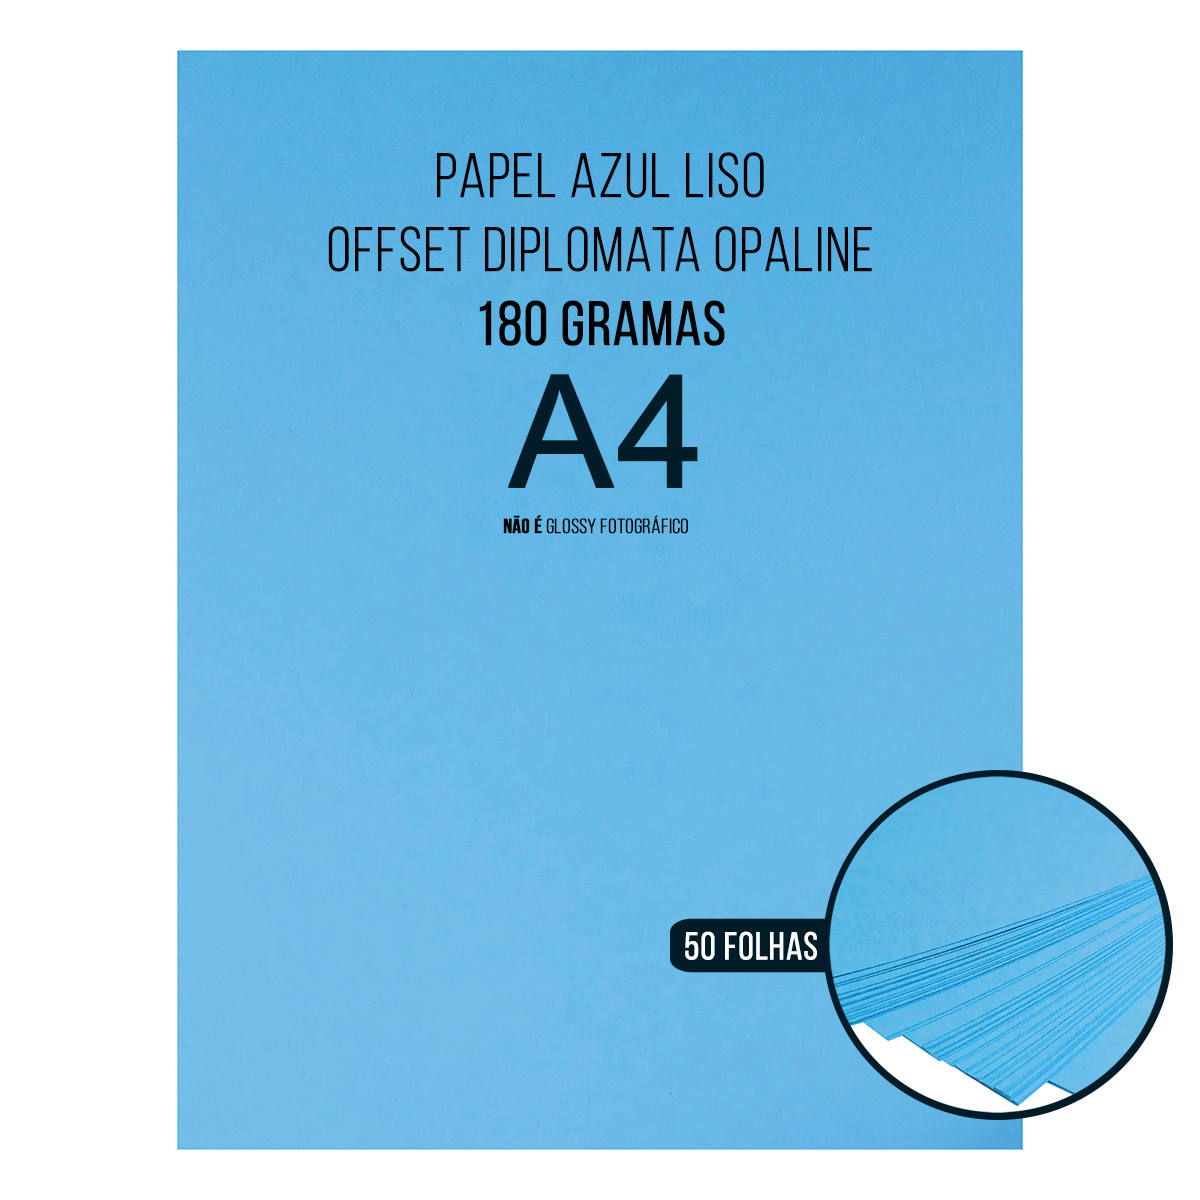 Papel Azul Diplomata Opaline Offset Liso 180g A4 Massa Colorida Tipo Ofício 60kg Pacote com 50 folhas